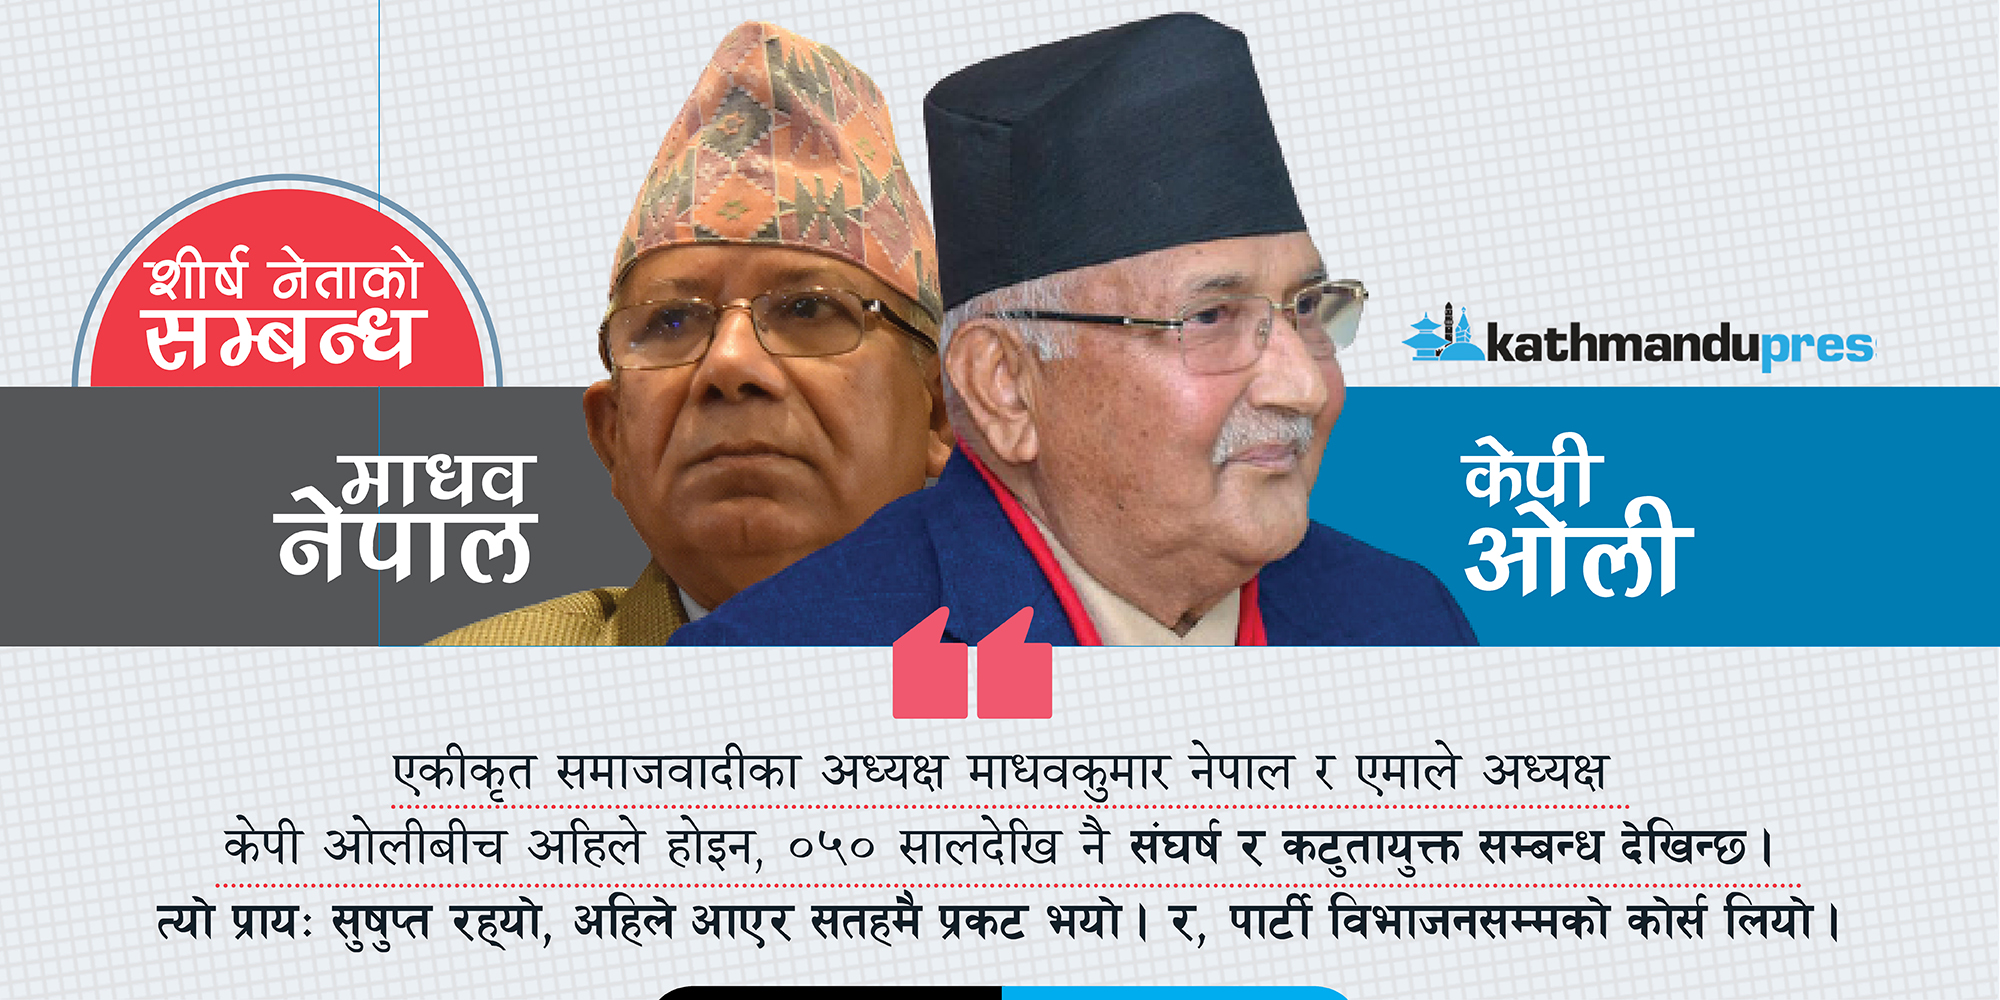 नेपाल-ओली सधैँ संघर्षपूर्ण सम्बन्ध